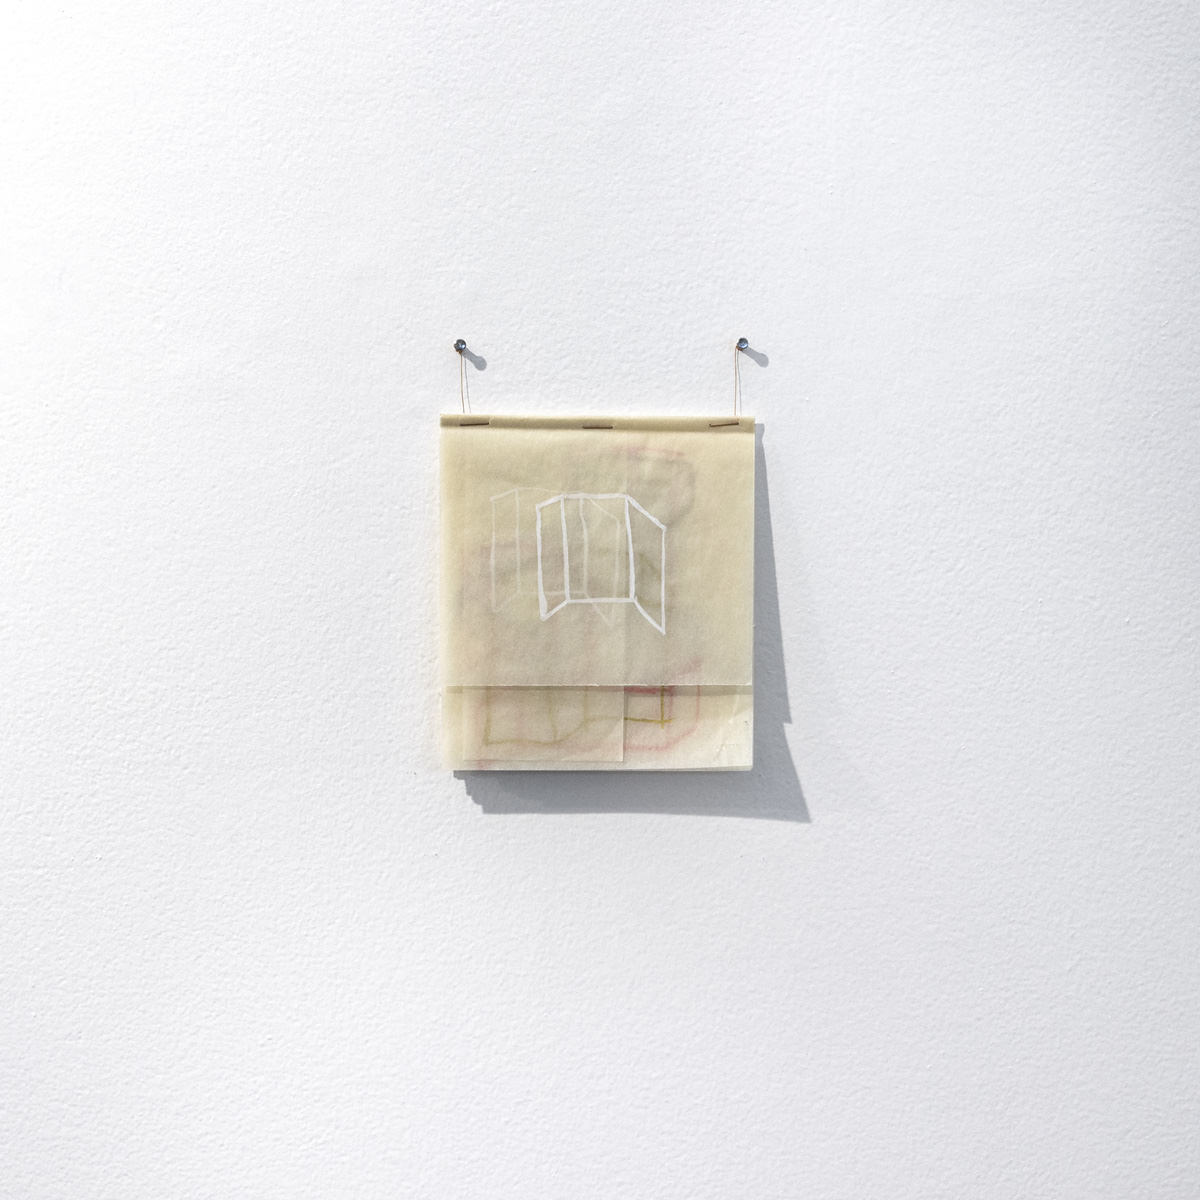 弗拉维亚·里贝罗（FláviaRibeiro）, 绘画, 2019 - 水粉和青铜粉在双层素描纸上 - 28,7 x 21 厘米. 照片: 泄露.